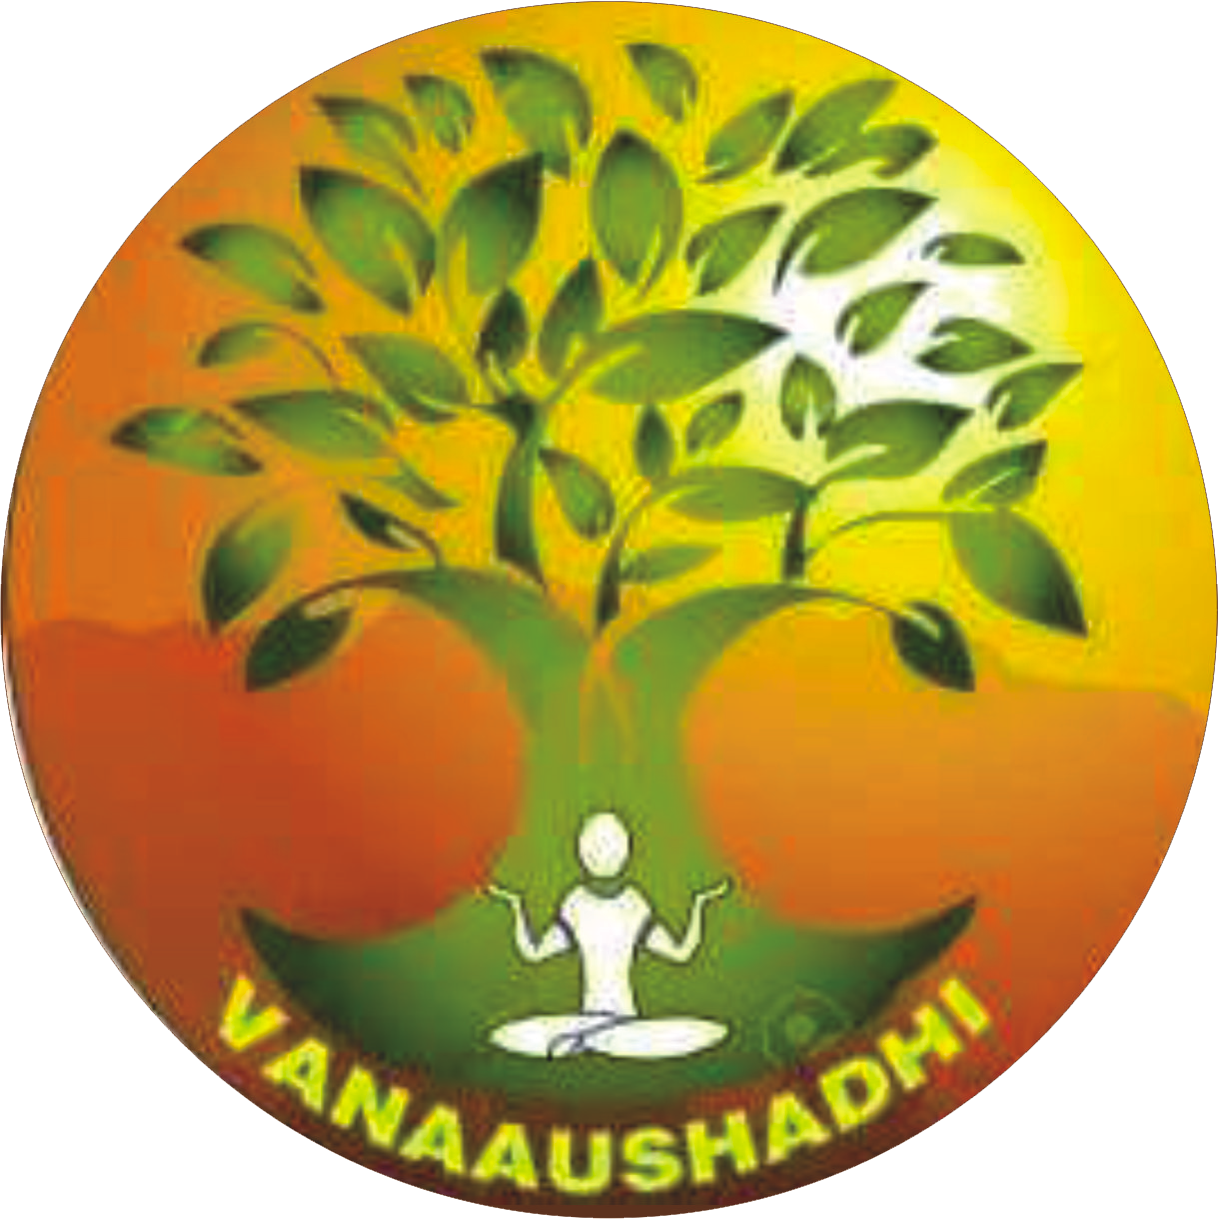 vanaaushadhi logo